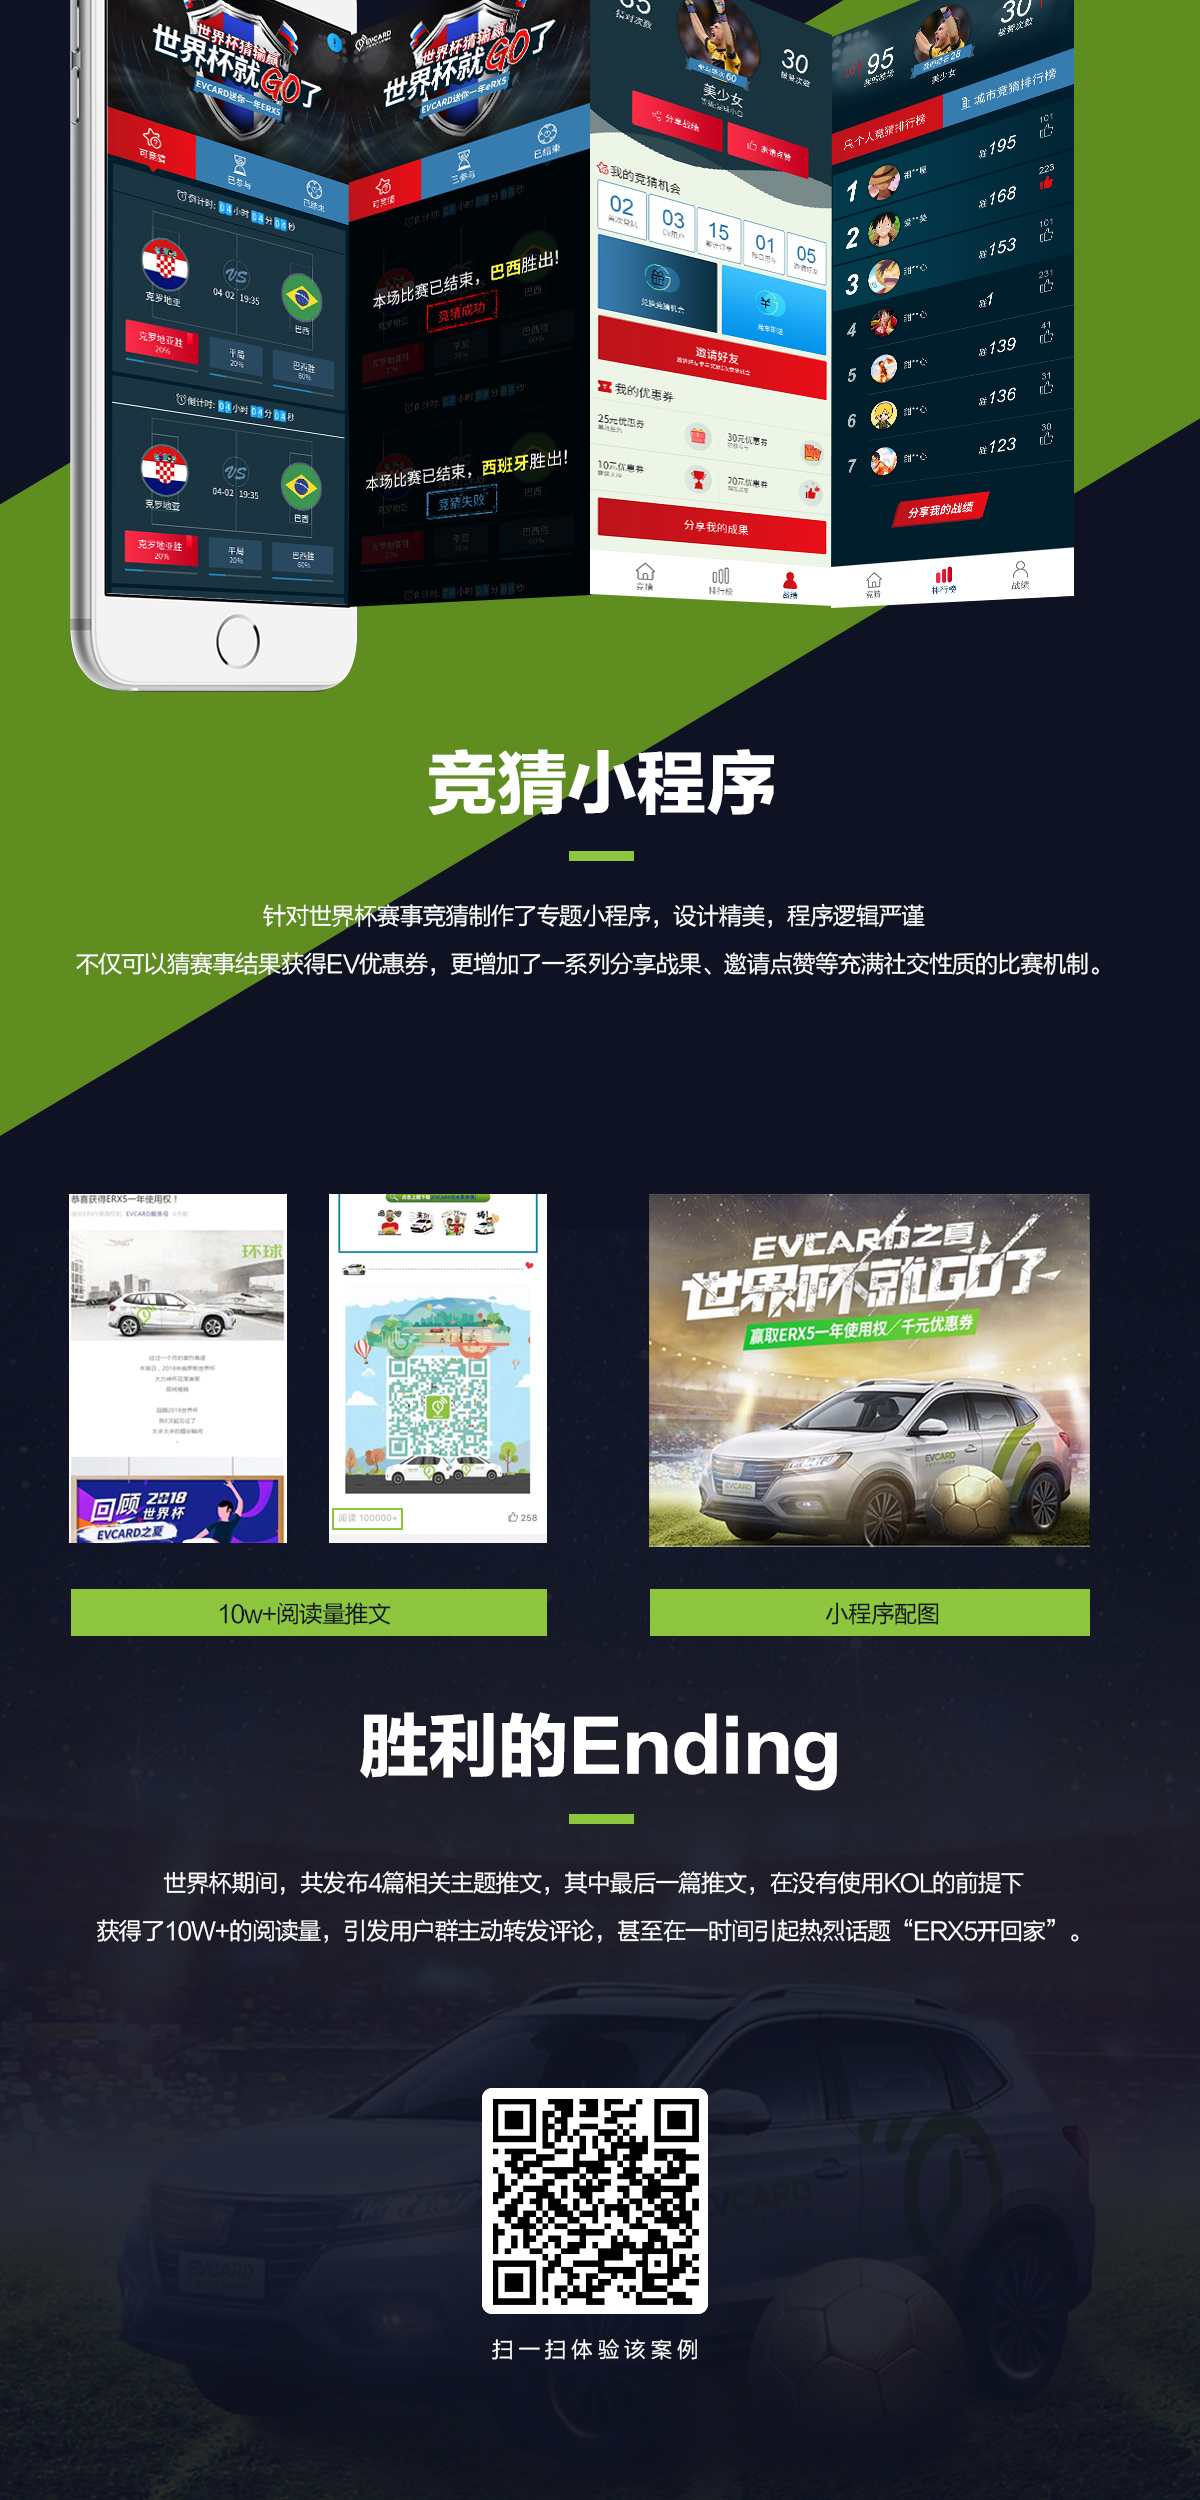 #EVCARD之夏，世界杯就GO了#-新媒体营销,新媒体广告公司,上海网络营销,微信代运营,高端网站建设,网站建设公司